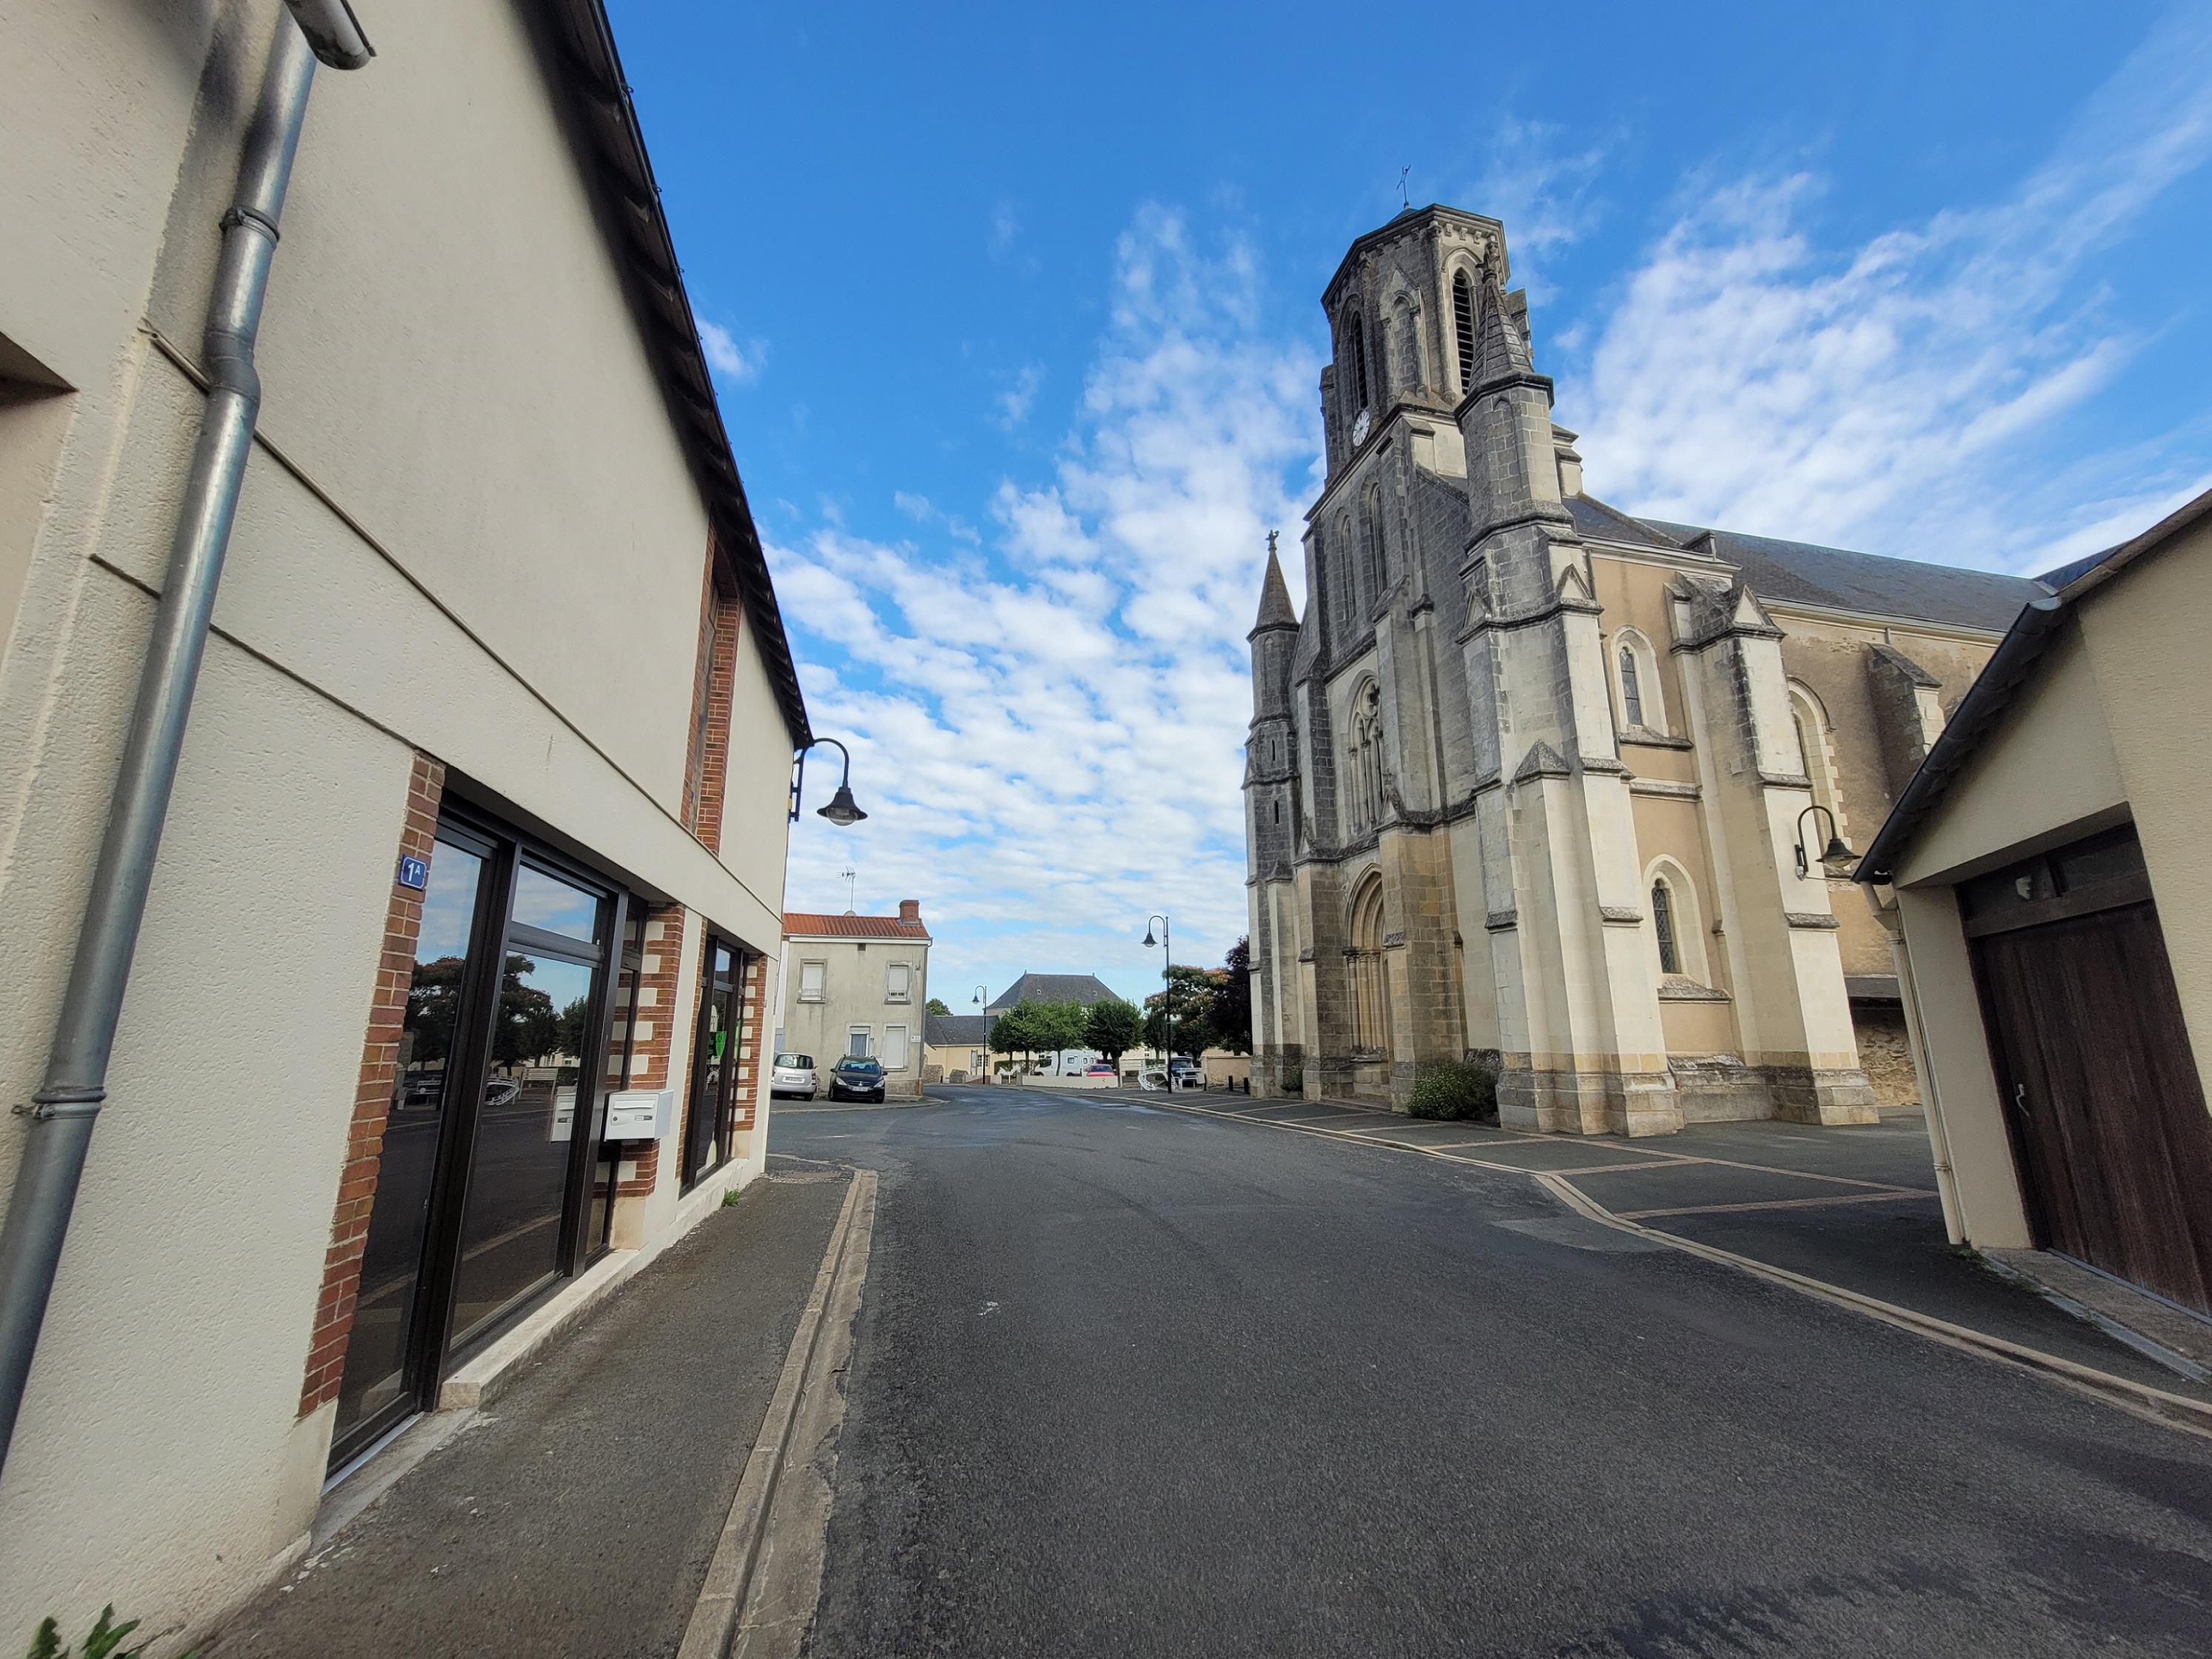 Le local proposé est situé à Mauges-sur-Loire (18 284 habitants), et plus précisément sur la commune déléguée de Saint-Laurent-du-Mottay (724 habitants). Le local se situe sur l’axe principal de Saint-Laurent-du-Mottay, rue de la Mare. Il est situé en cœur de bourg, face à l’Eglise et voisin du salon de coiffure. 

Trois commerces sont ouverts à Saint-Laurent-du-Mottay : un restaurant et service traiteur, une boulangerie avec une épicerie d’appoint, et un salon de coiffure. De l’agriculture à l’industrie, en passant par le commerce et les services, ce sont plus de 40 entreprises qui sont implantées à Saint-Laurent-du-Mottay. 

Le local dispose d’une surface de 26,6m². Aujourd’hui, il se compose d’un hall d’entrée, d’un bureau et d’une réserve. L’aménagement pourra être réorganisé, à charge du Preneur. Les sanitaires sont partagés avec le commerce voisin, séparé par une porte avec serrure. 
Le local a été entièrement rénové à l’hiver 2021. La vitrine est neuve. Le chauffage est électrique. Des arrivées d’eau sont disponibles dans le bureau et dans la réserve. 

Le local est mis à disposition d'une activité de commerce ou de service (hors restaurant).
Le montant indicatif du loyer est 177 € TTC - Pas de rachat de fonds de commerce.